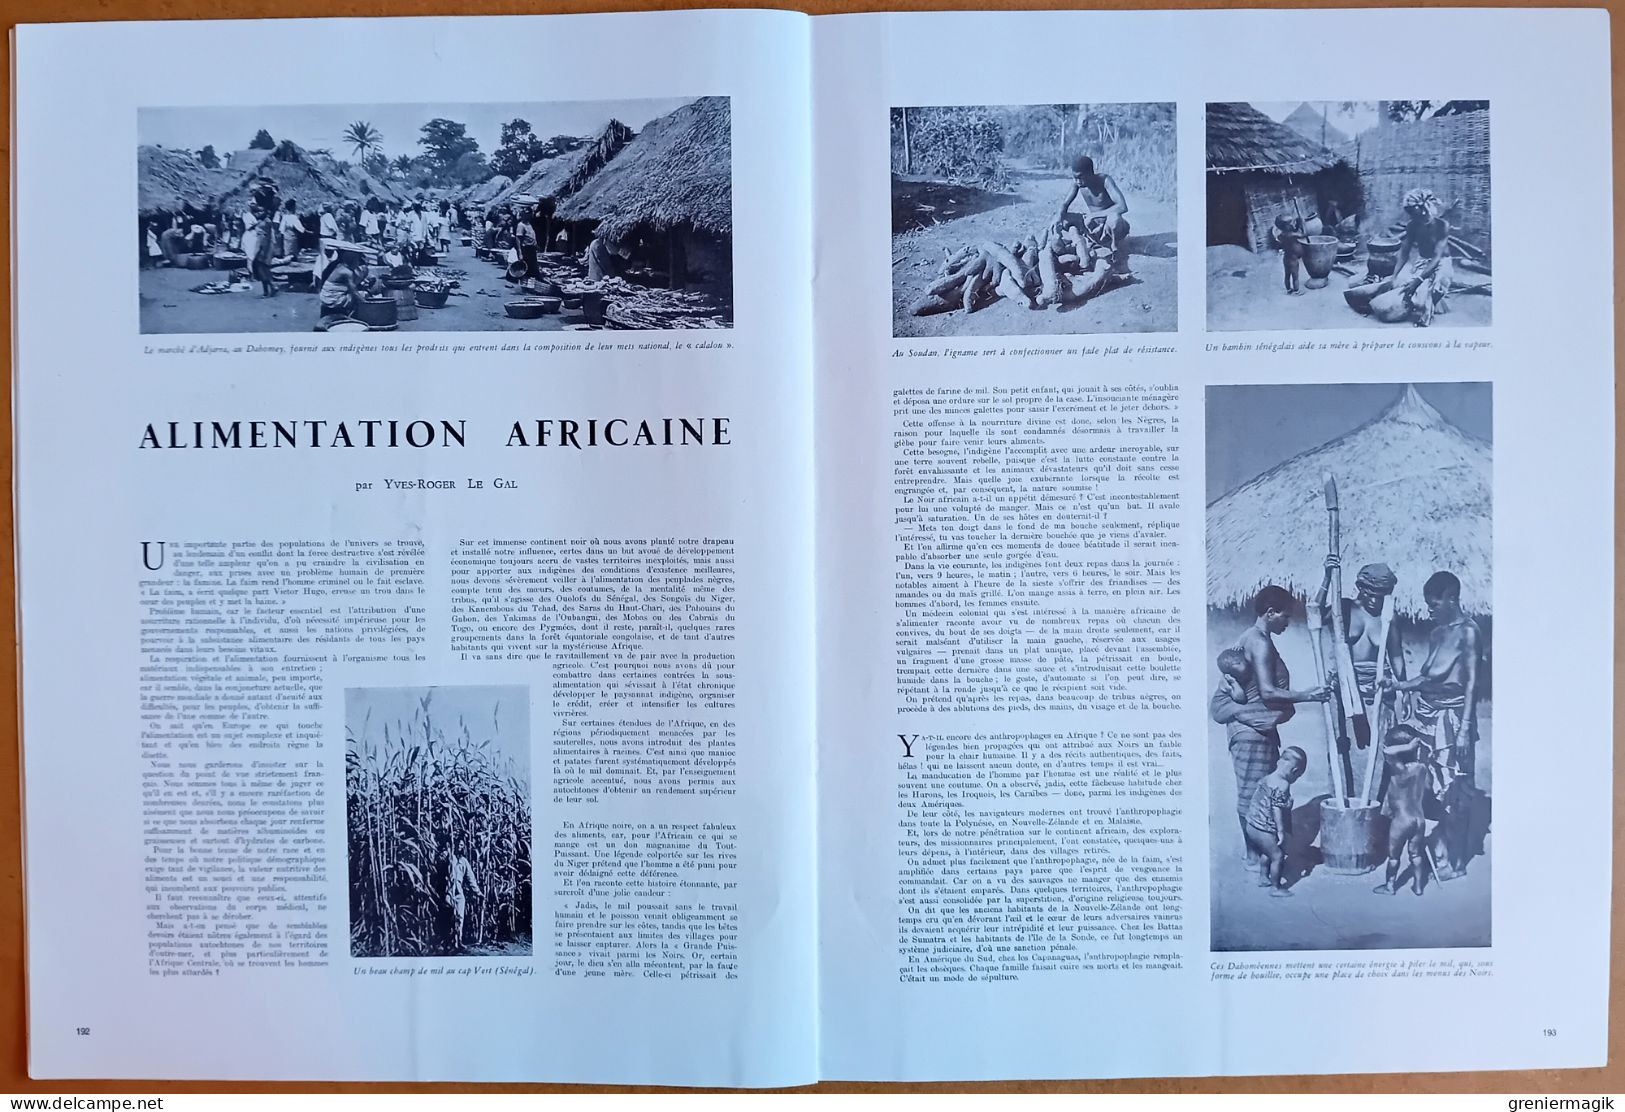 France Illustration N°73 22/02/1947 Signatures des Traités de paix/Pola Italie/Alimentation africaine/Boleslav Bierut